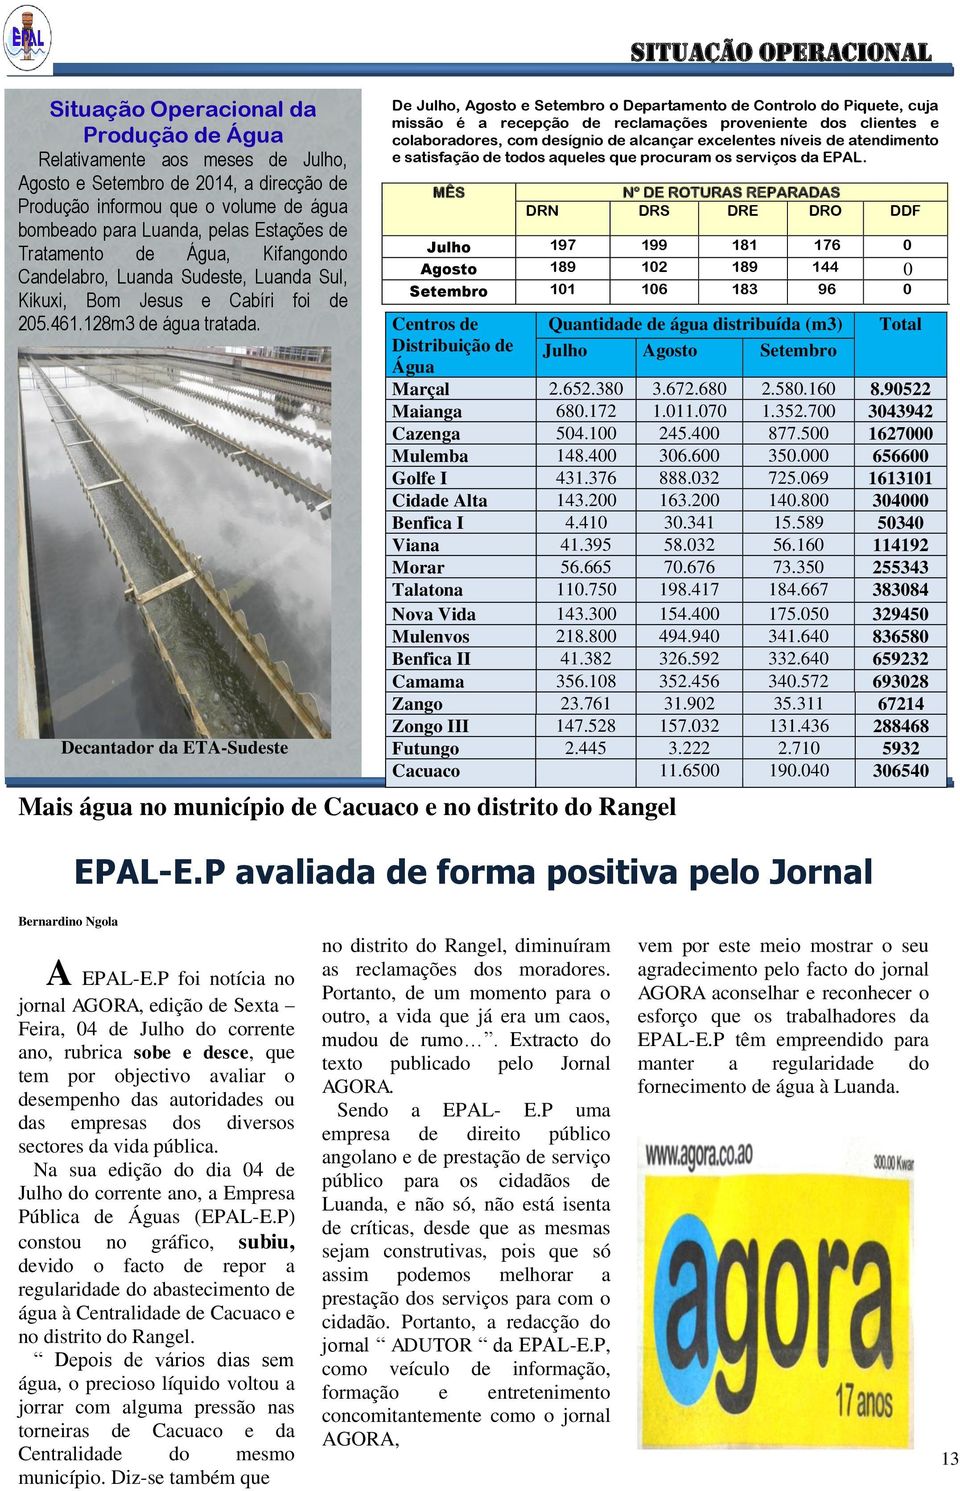 Decantador da ETA-Sudeste Mais água no município de Cacuaco e no distrito do Rangel Bernardino Ngola Situação operacional EPAL-E.P avaliada de forma positiva pelo Jornal AGORA A EPAL-E.